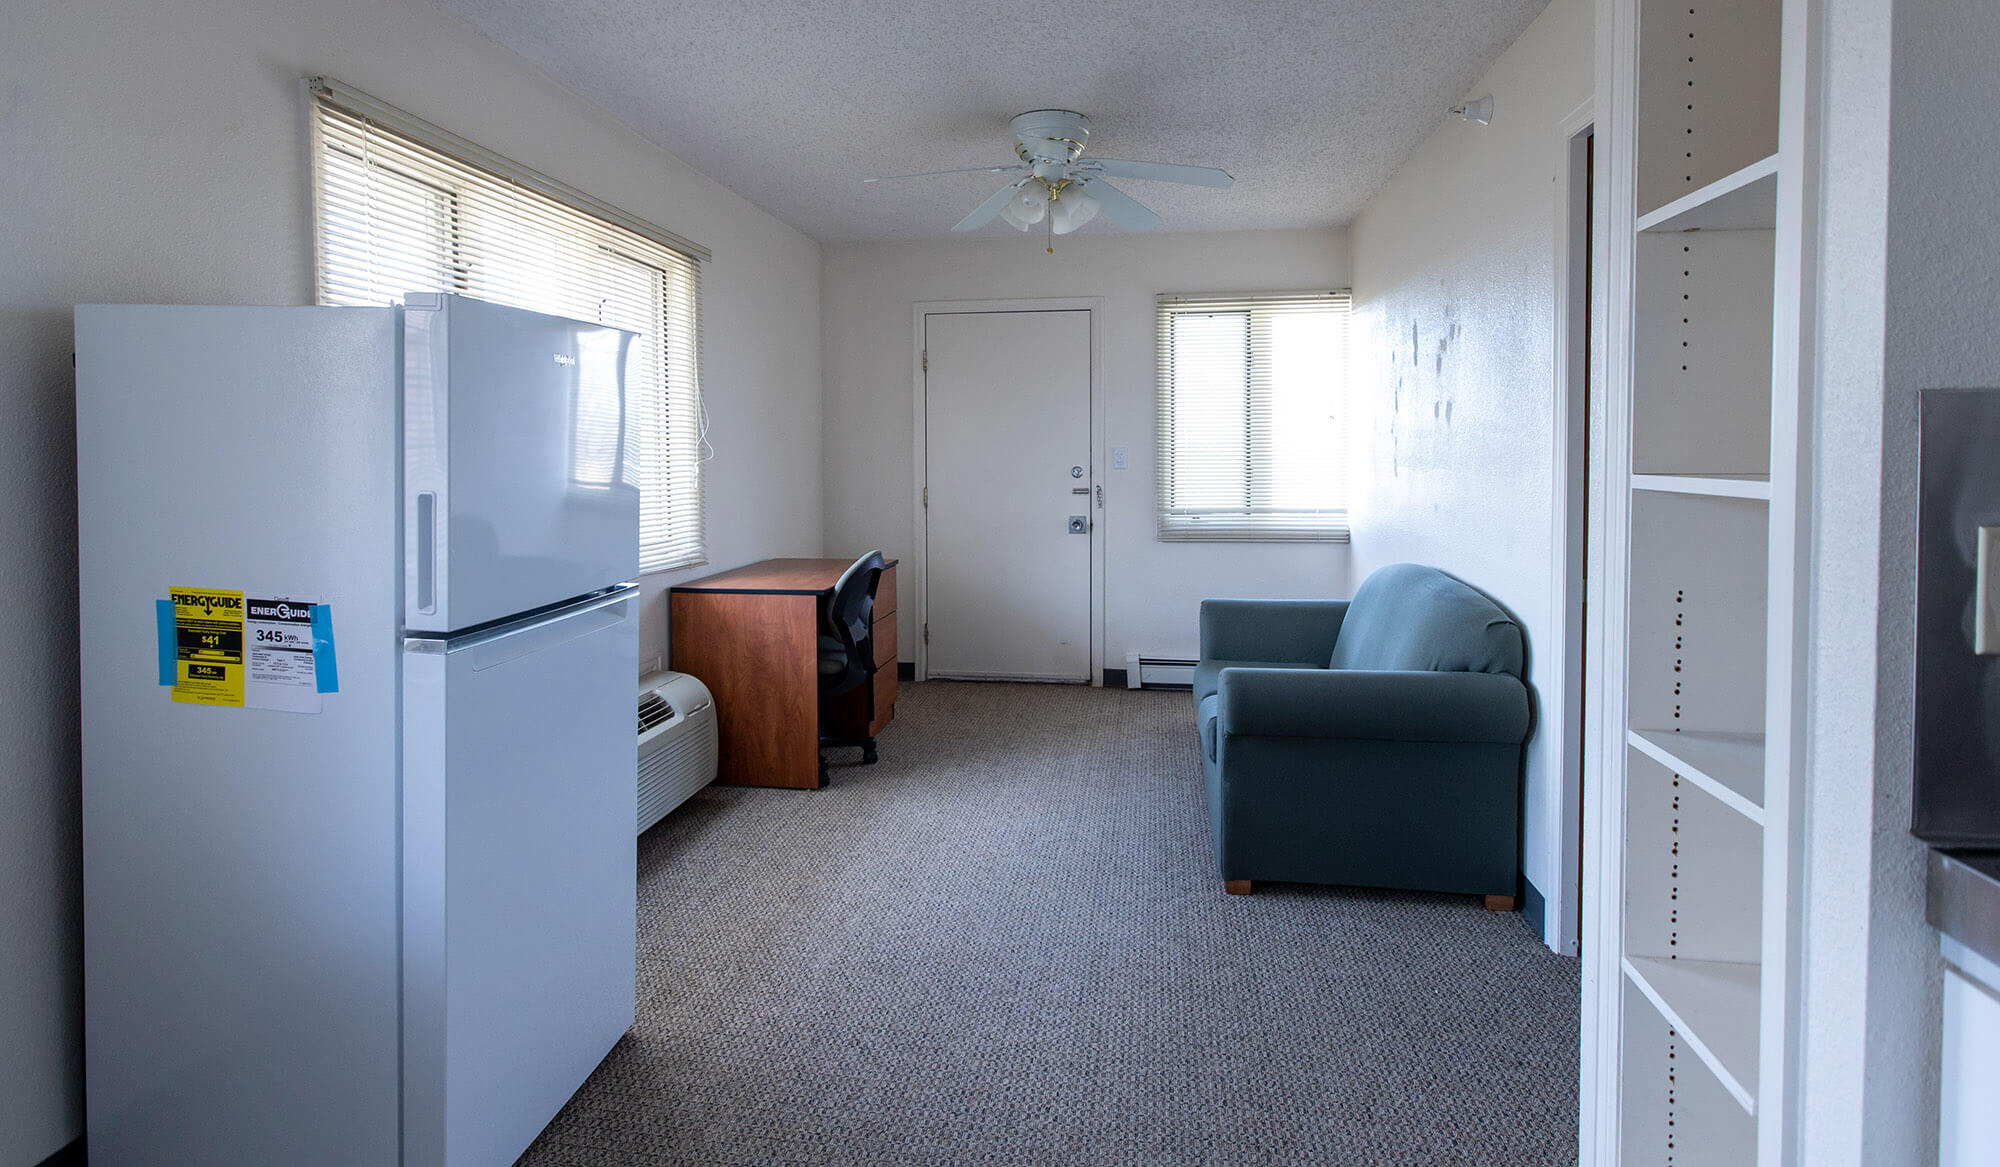 casper-college-thorson-Apartment-Interiors-19